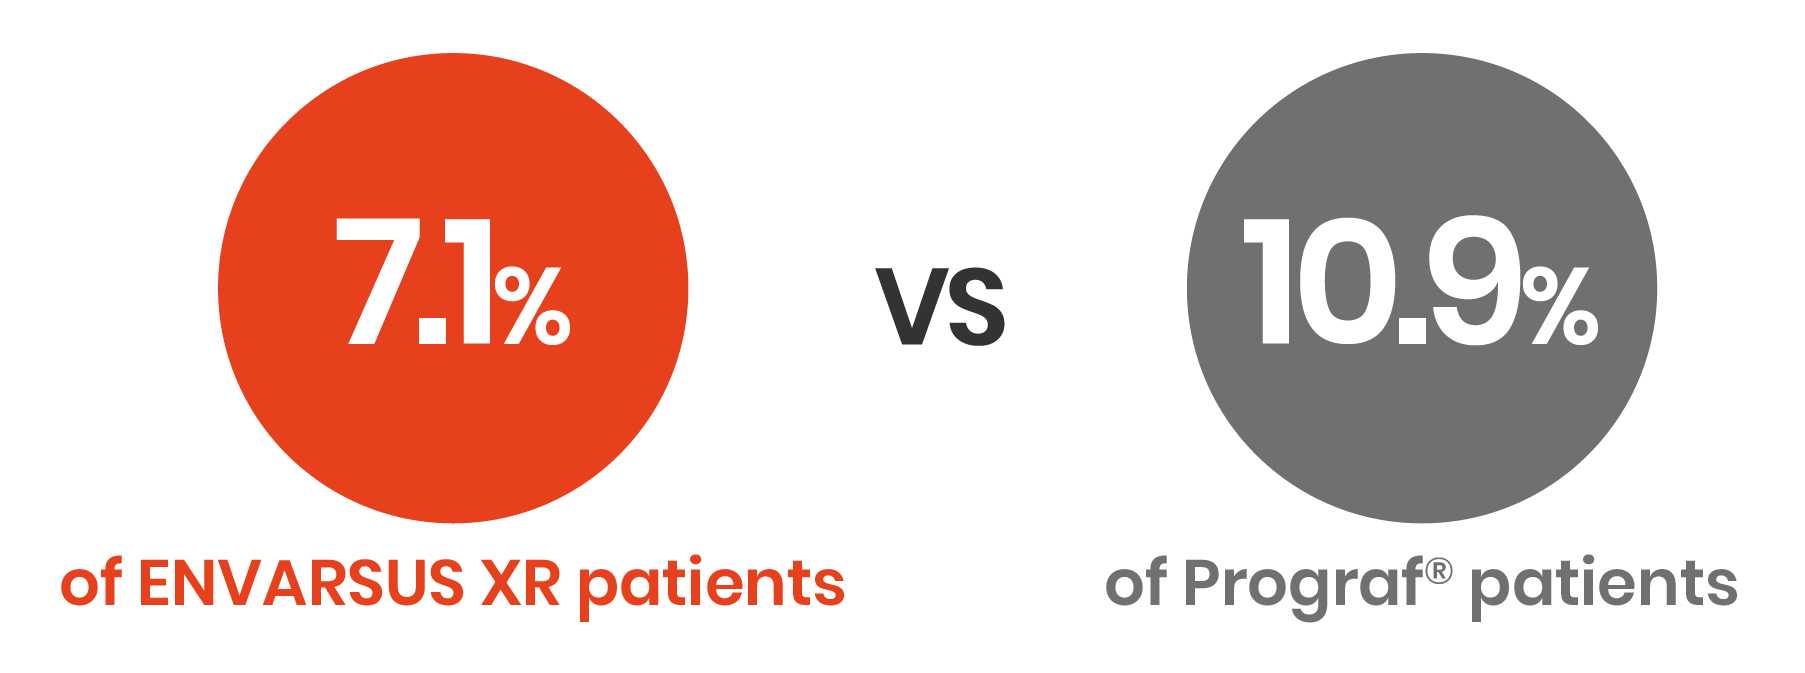 7.1% of ENVARSUS XR patients vs 10.9% of Prograf® patients